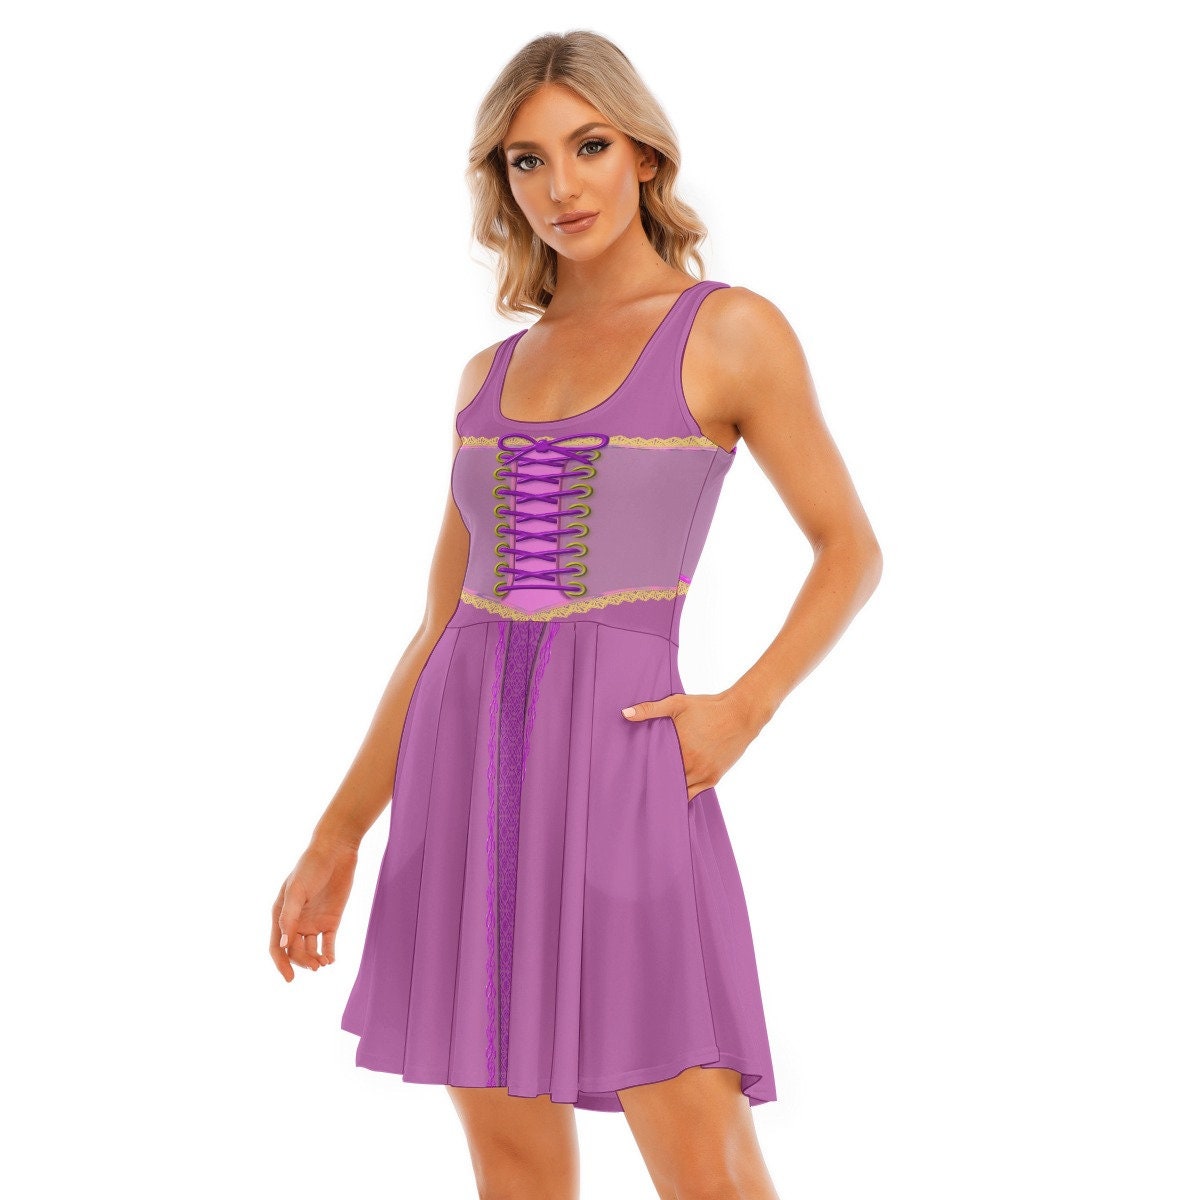 Rapunzel Women's Tank Vest Dress, Sexy Dress, Adult Halloween Costume, Halloween Dress, Cosplay Dress, Gift for Her, Bound, Dapper Day